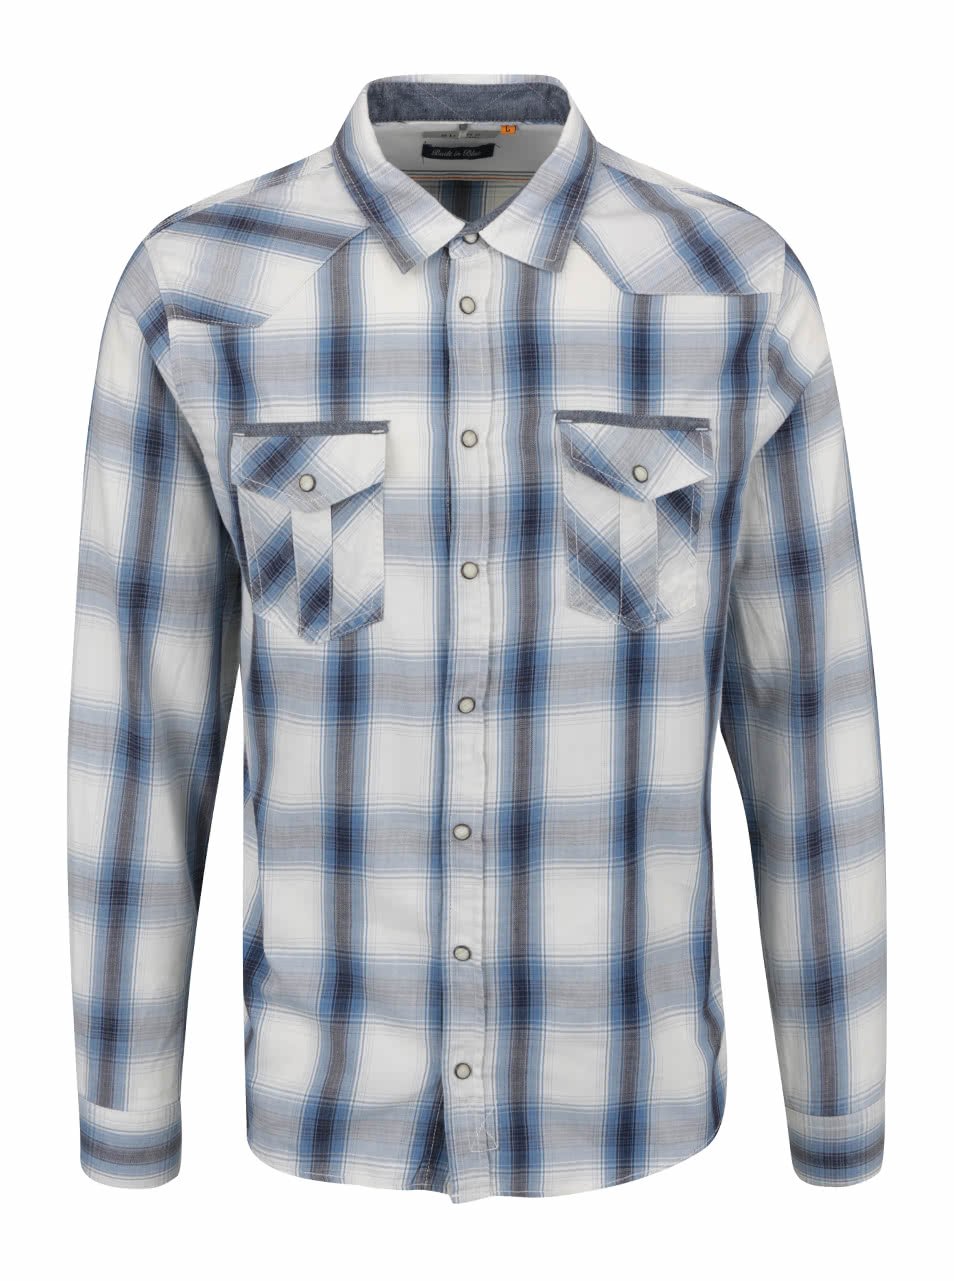 Modro-krémová neformální košile s kapsami Blend